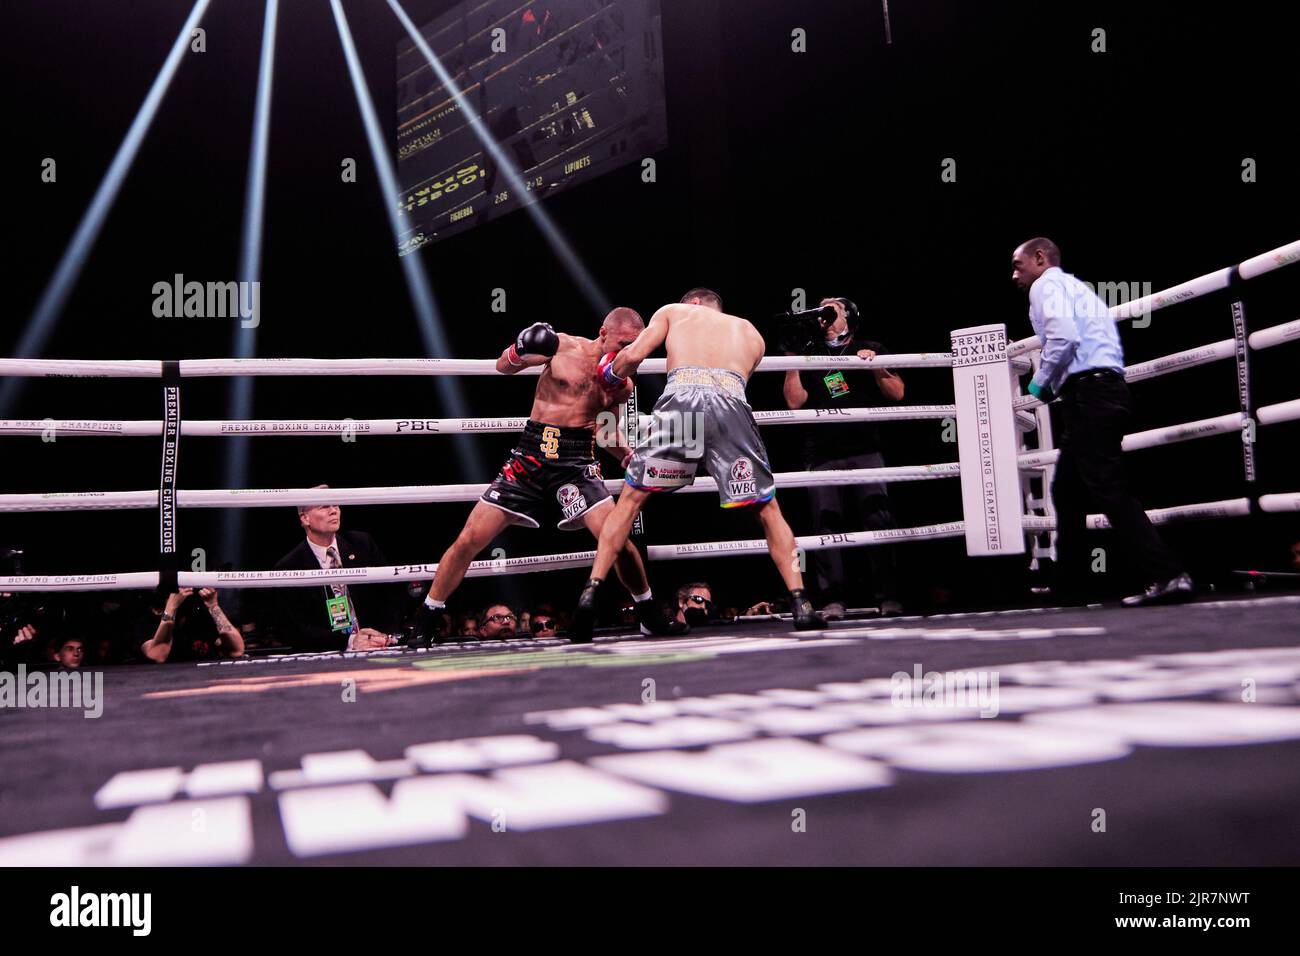 Boxeador profesional IBF Sergey Lipinets peso ligero derrota a WBC Lightweight Omar Figueroa Jr. En un partido de boxeo de 12 rondas Foto de stock